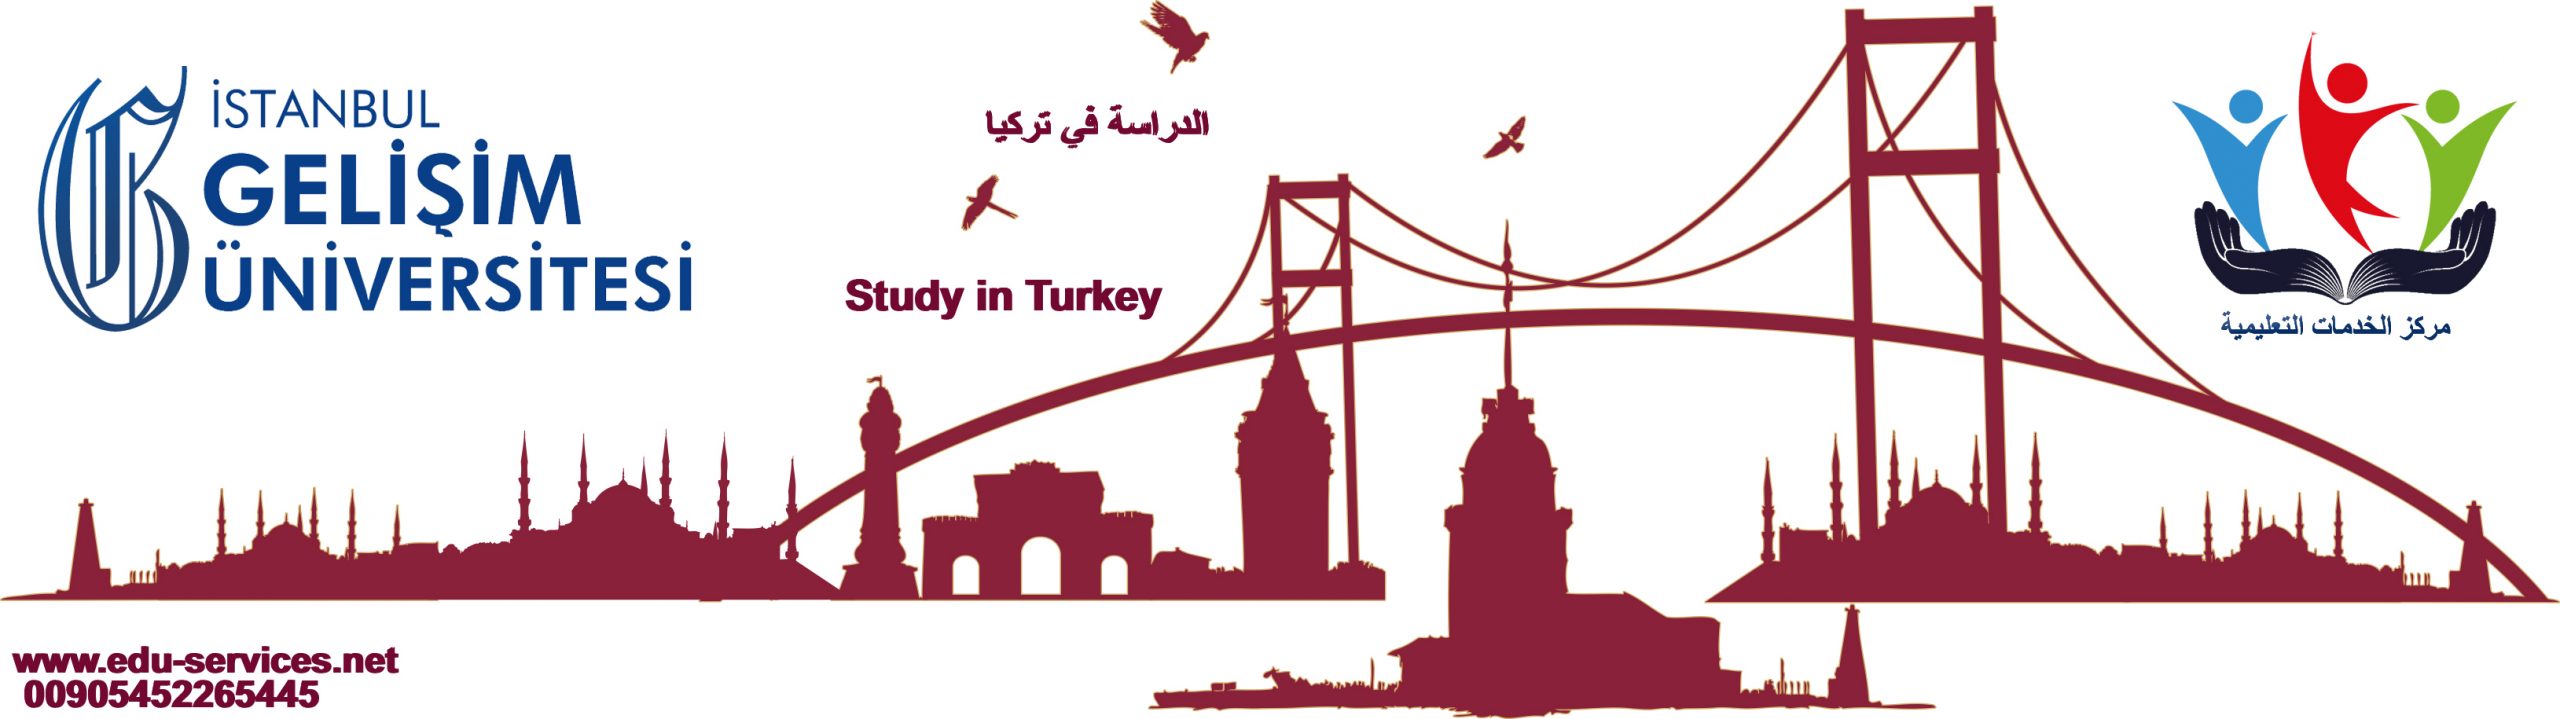 الدراسة في تركيا-جامعة اسطنبول جيليشيم